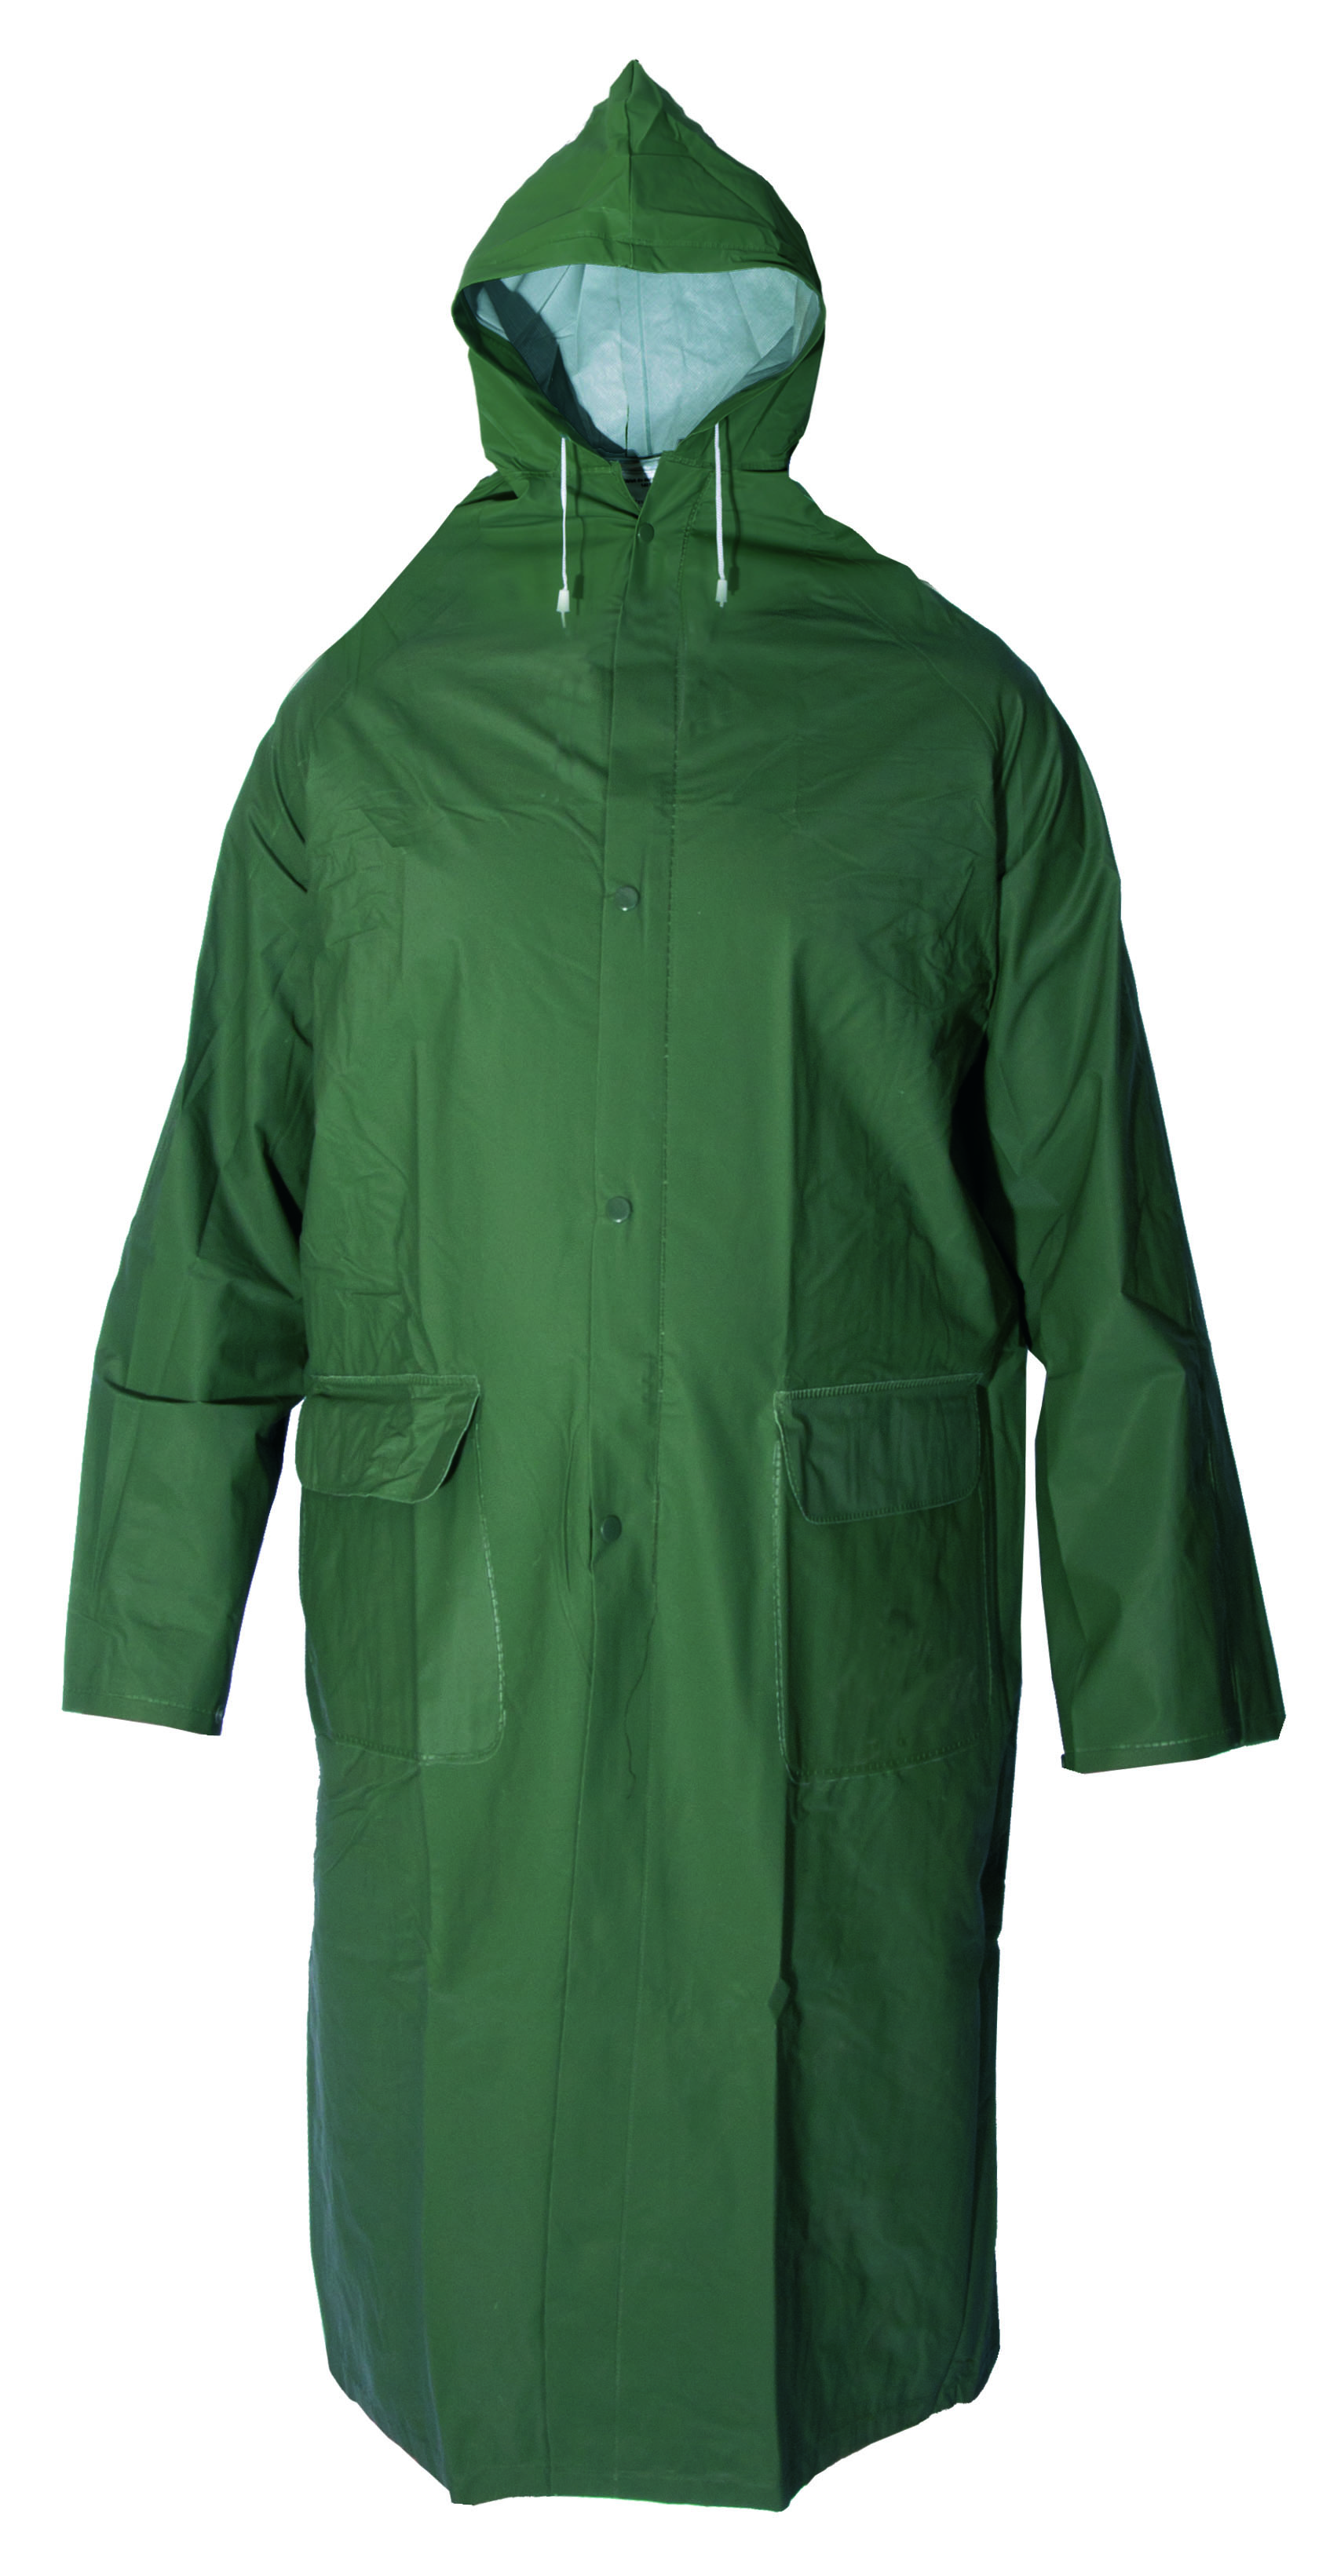 plášť do deště, s kapucí, zelený, velikost L 1.00 Kg TOP Sklad4 600245 18